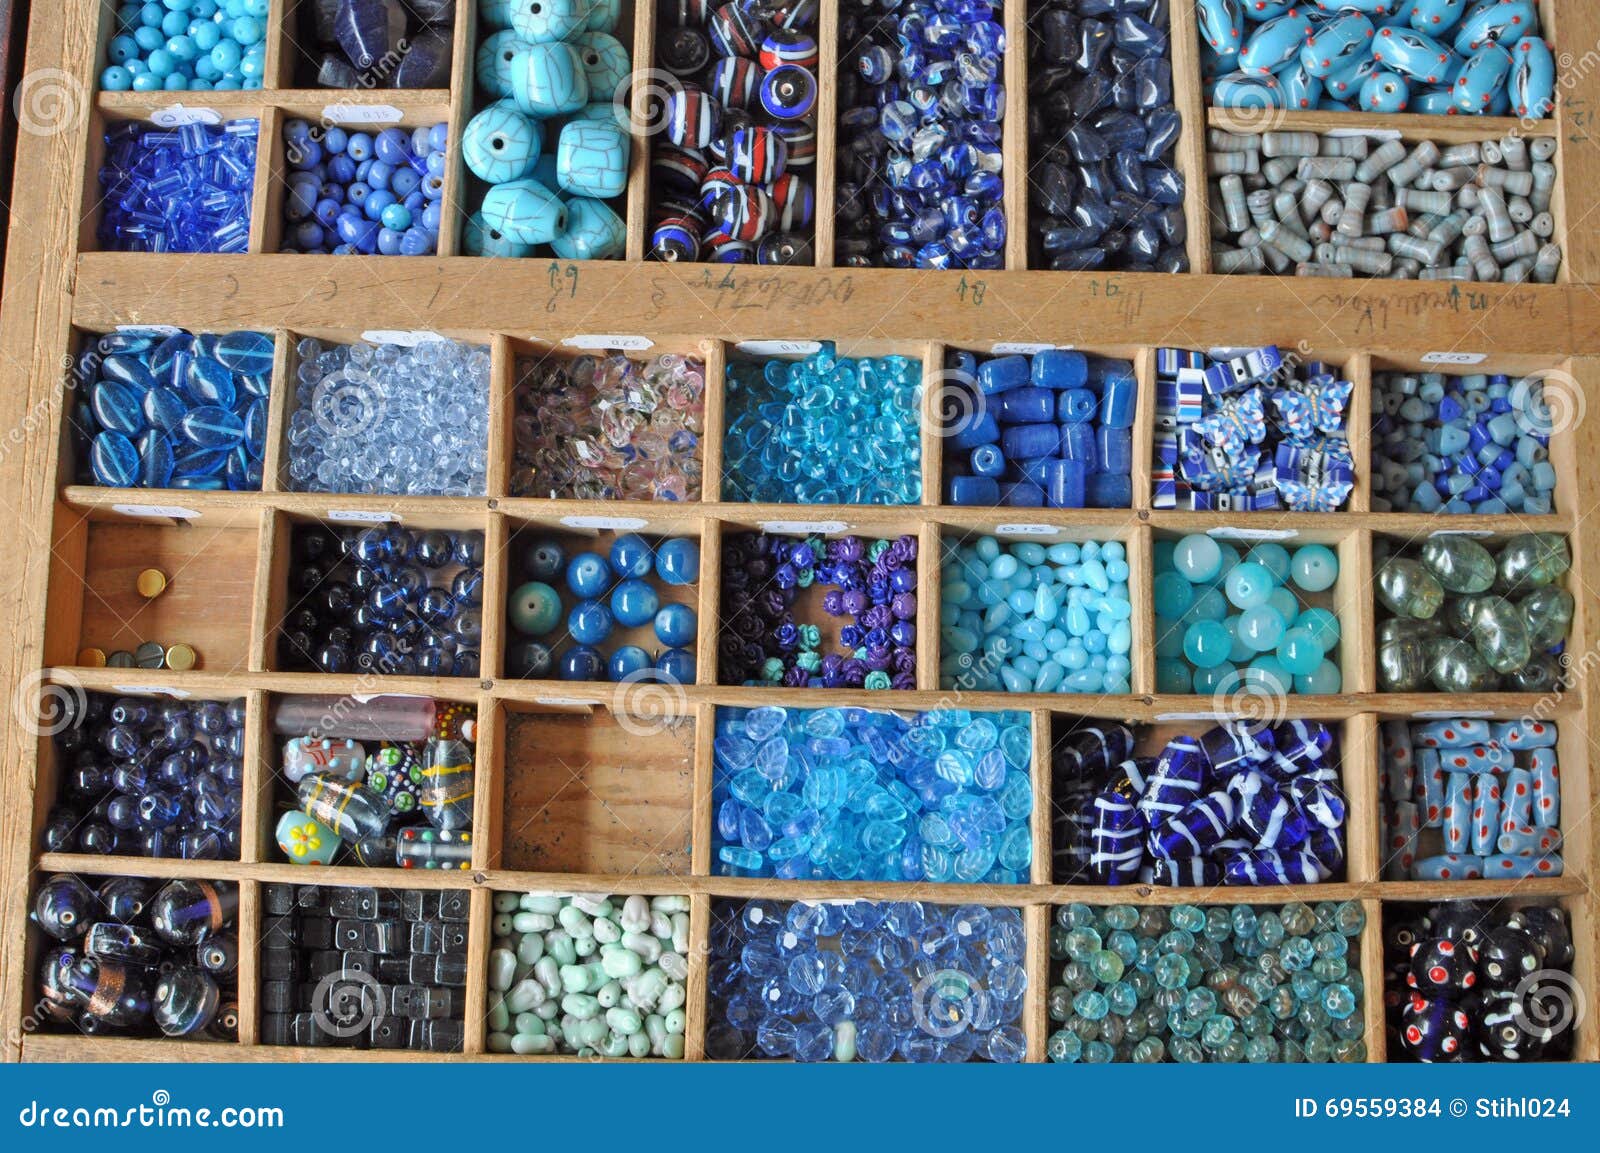 Welvarend Terzijde ondergeschikt Blauwe parels en parels stock foto. Image of juwelen - 69559384